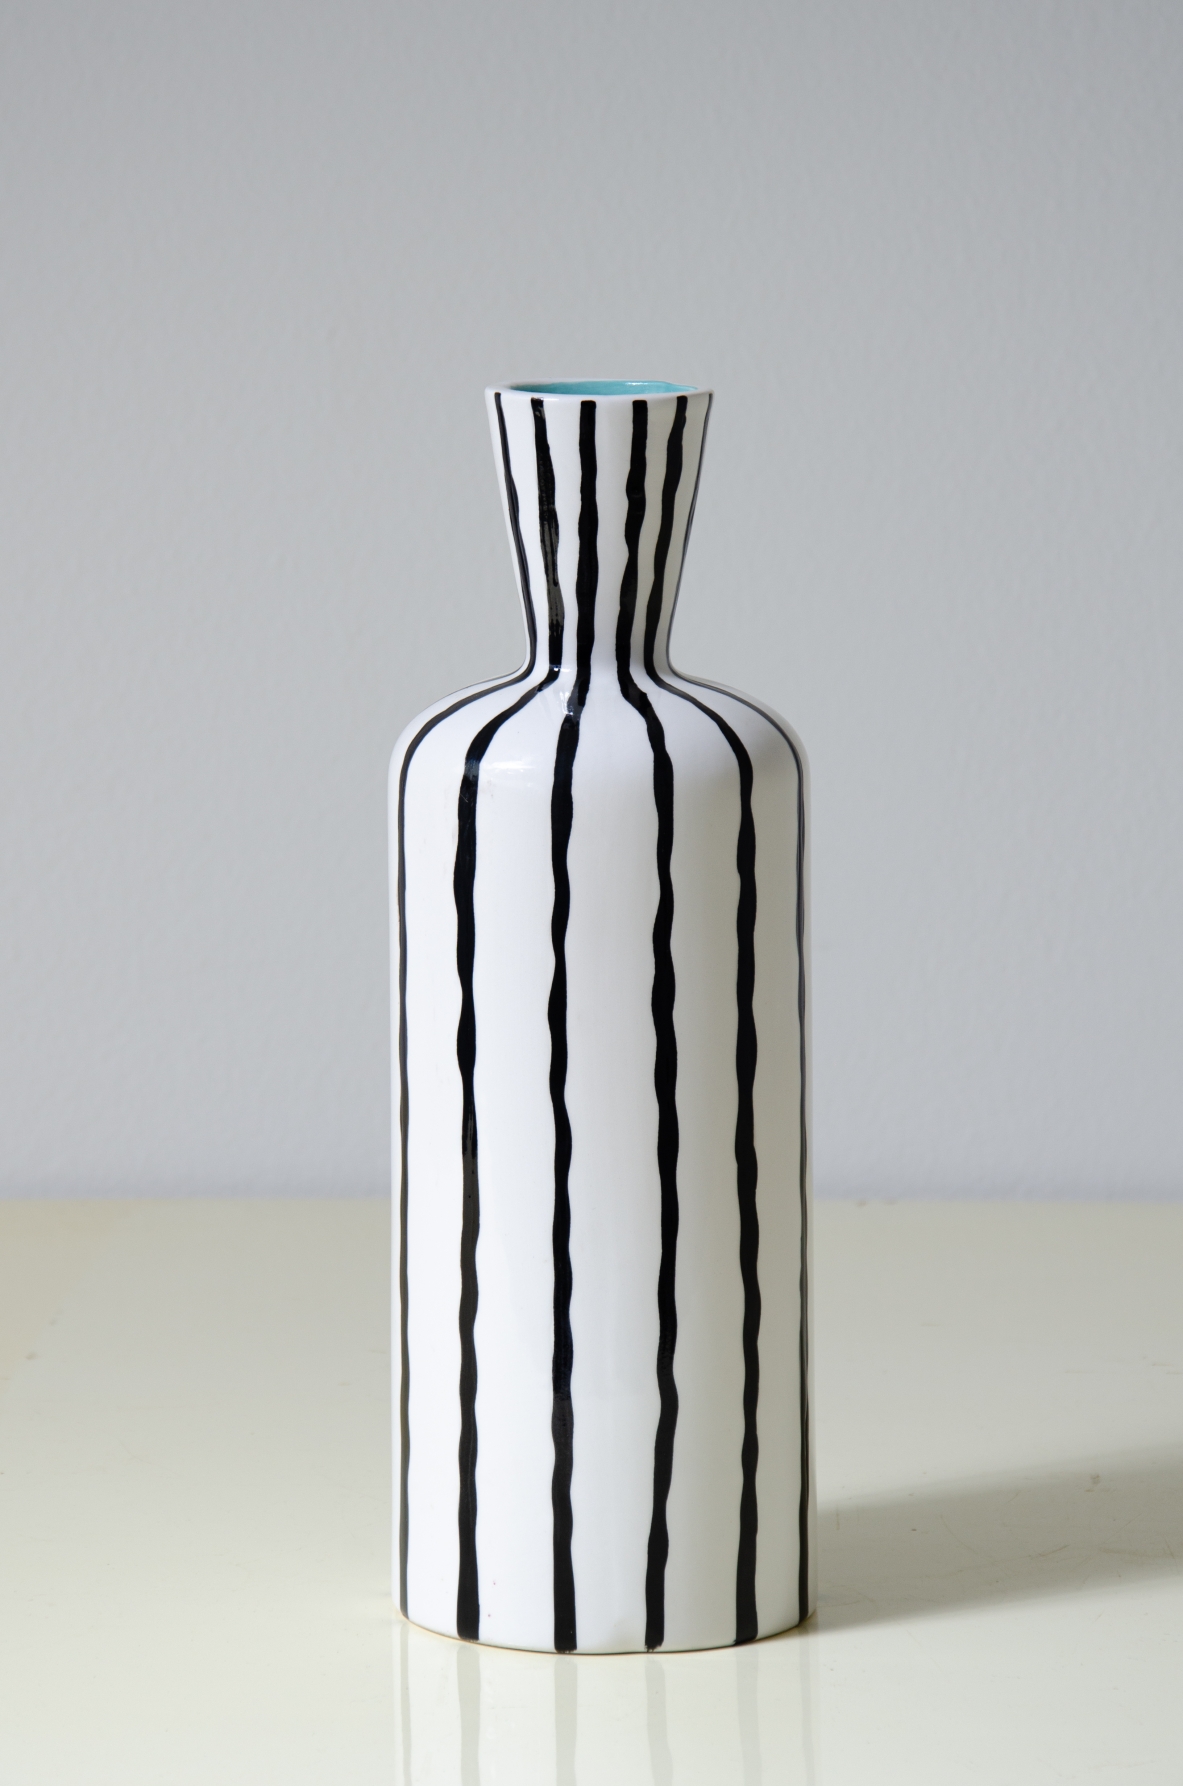 Gio Ponti. Vaso in ceramica decorato. Manifattura Ginori, 1970ca.